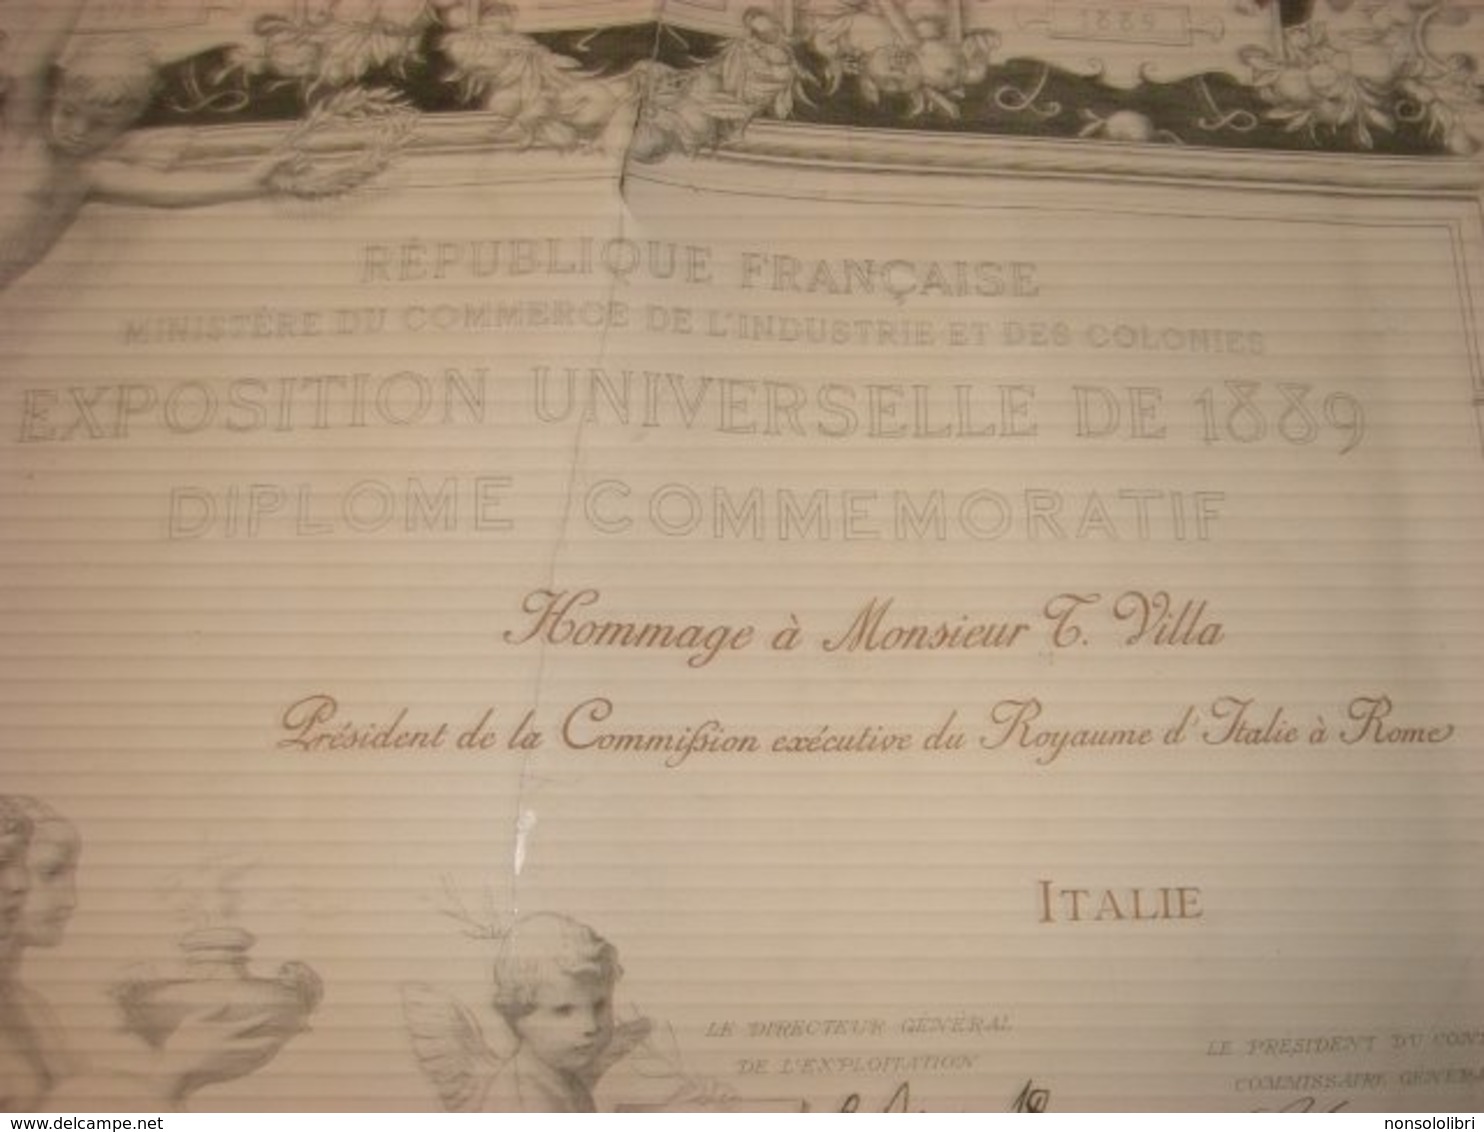 DIPLOMA REPUBLIQUE FRANCAISE EXPOSITION UNIVERSELLE DE 1889 DIPLOME COMMEMORATIF - Diplomi E Pagelle